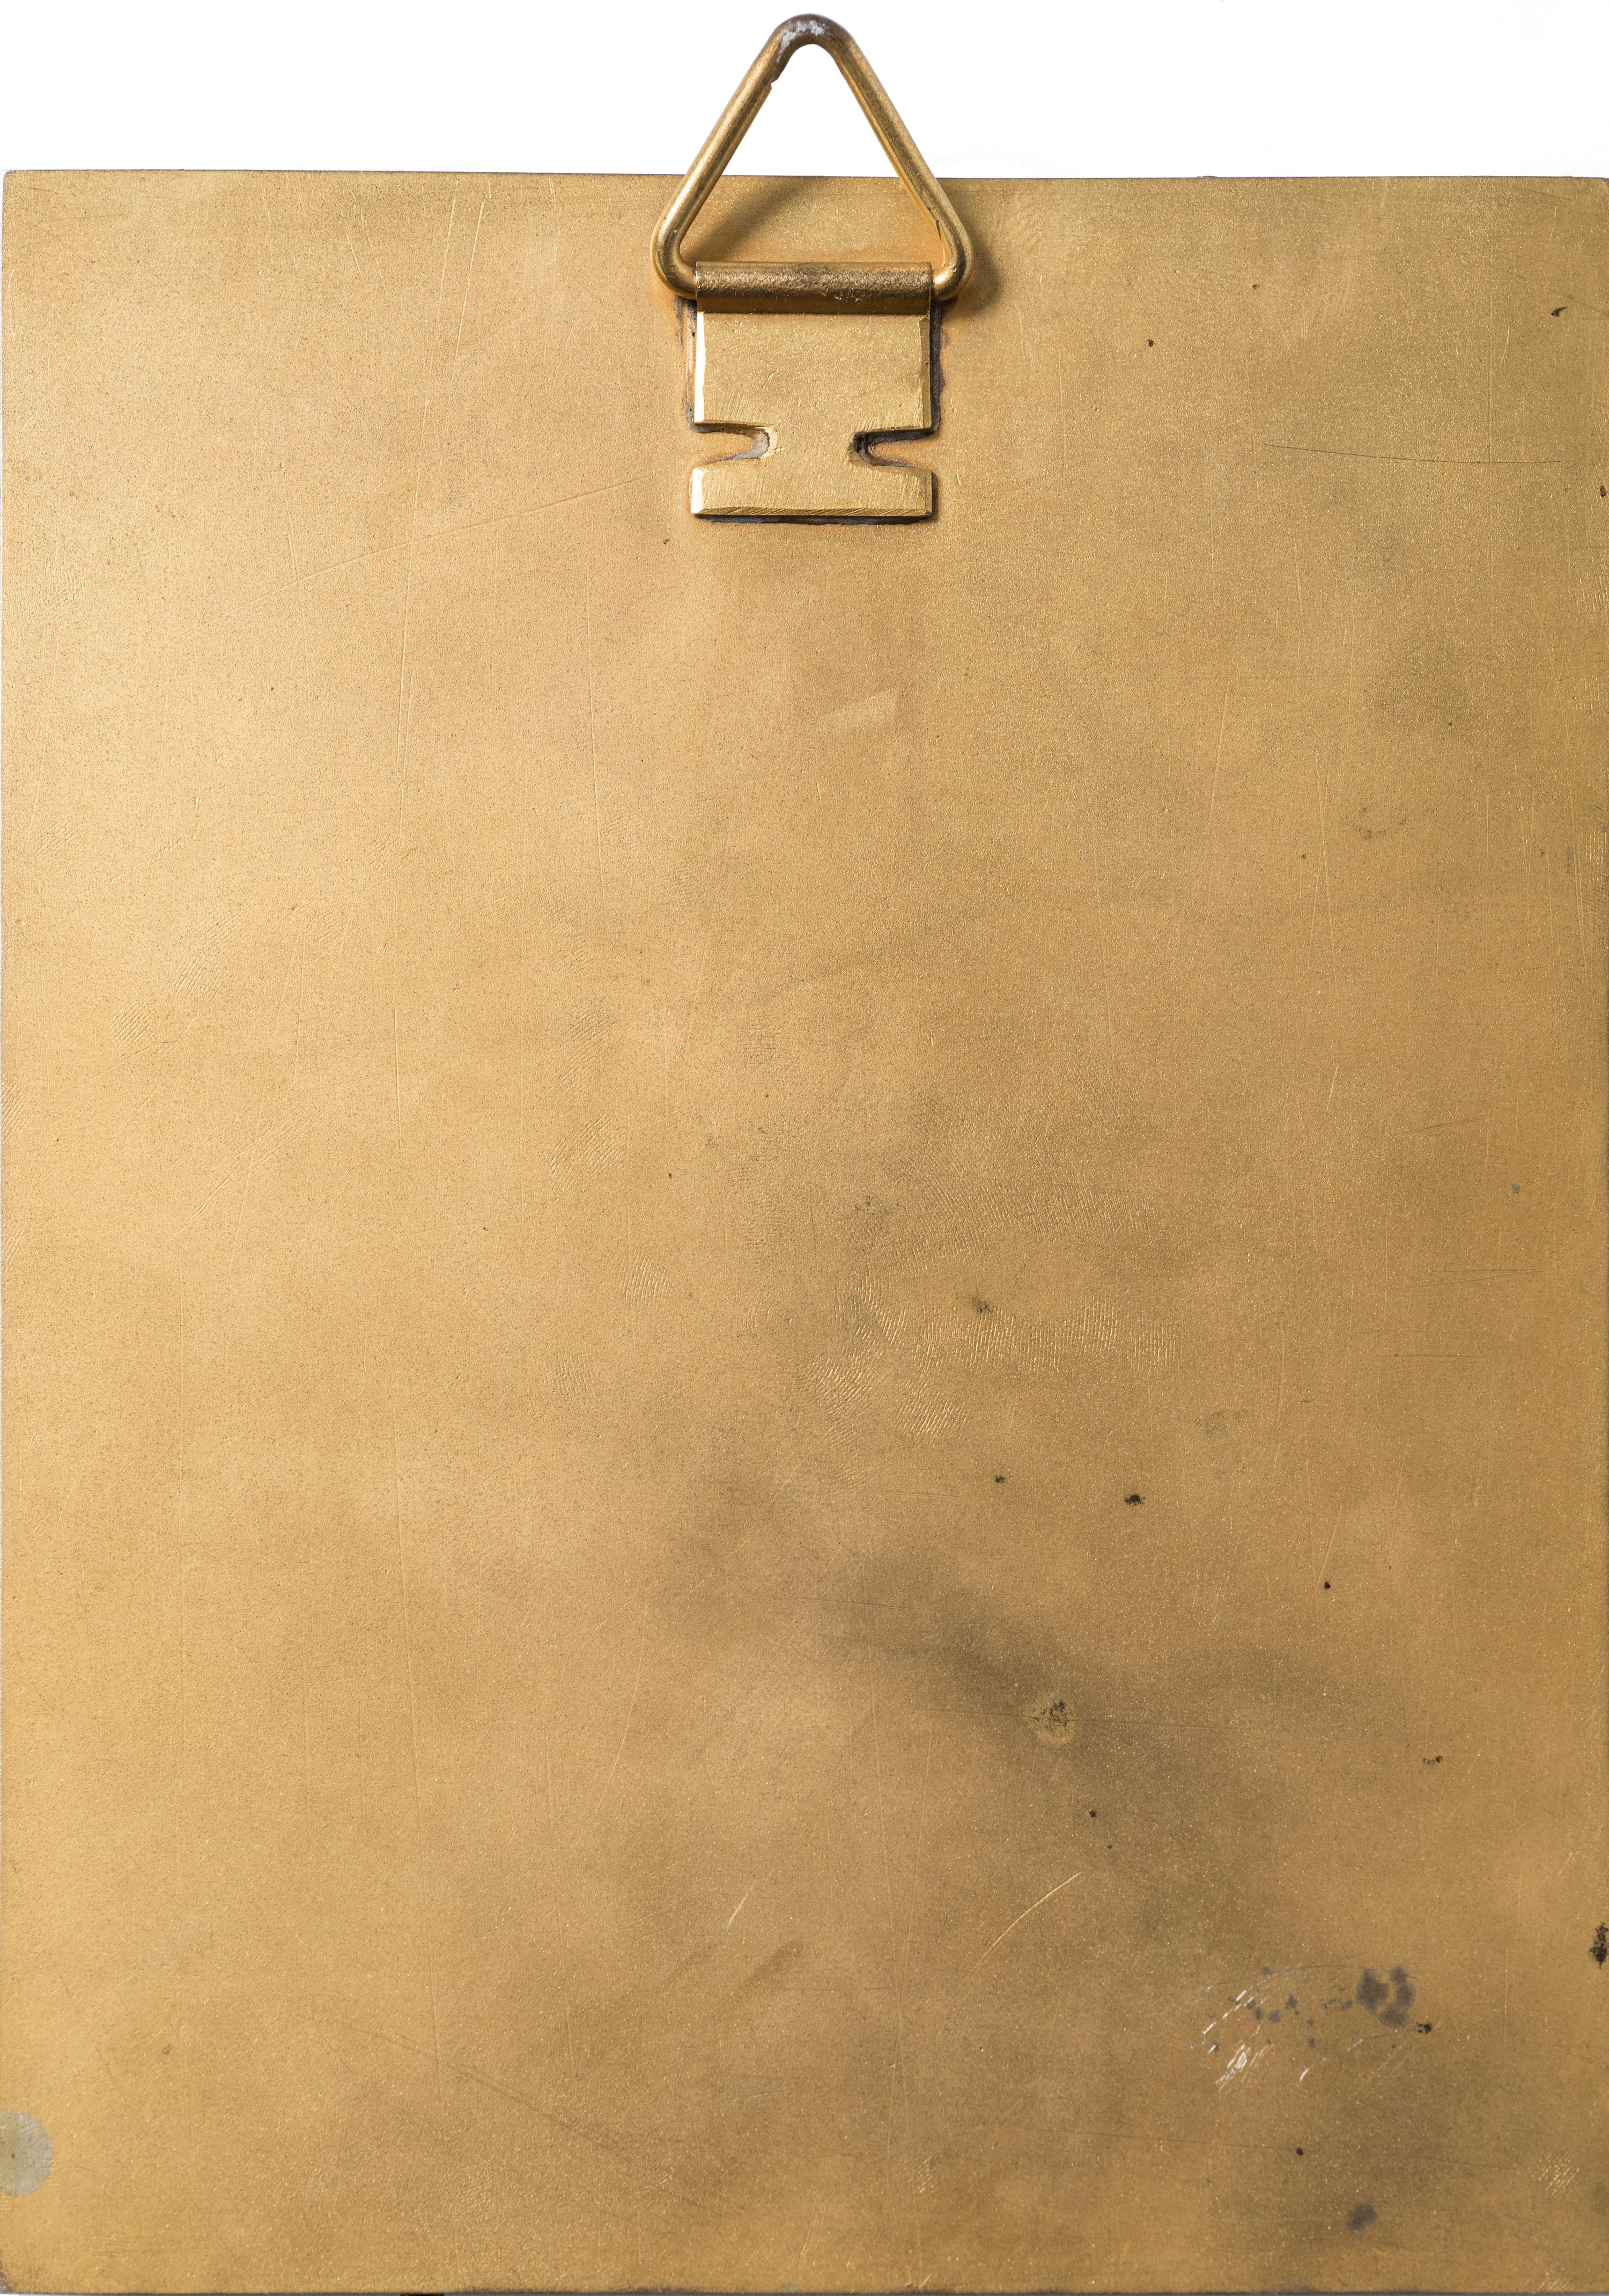 Petit portrait par Arturo Noci réalisé en 1909 probablement aux USA. Cadre en bronze
Signé et daté par l'artiste en bas à droite.
Très bonnes conditions.

Cette œuvre d'art est expédiée d'Italie. En vertu de la législation existante, toute œuvre